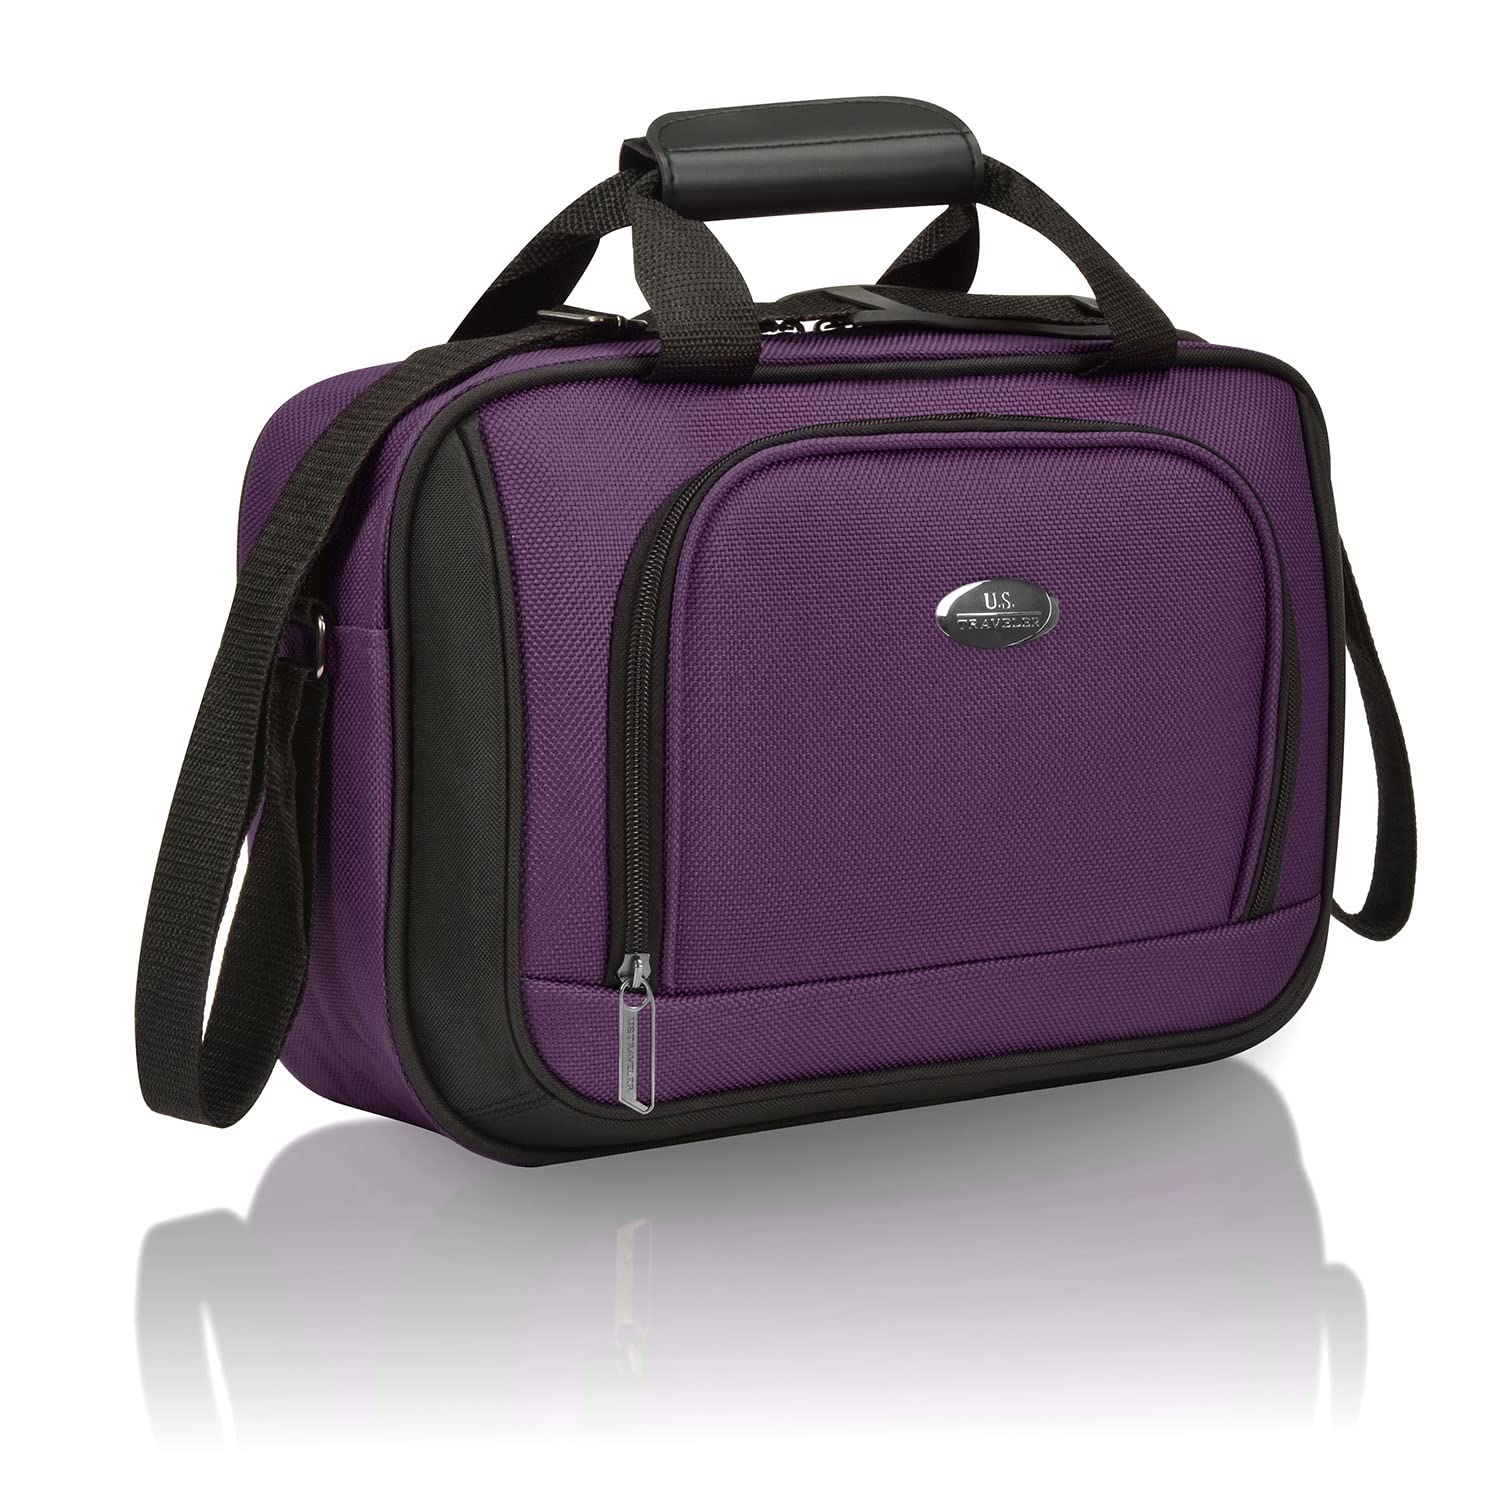 U.S. Traveler Rugged Fabric Expandable Carry-on Luggage Set, Purple, 4 Wheel